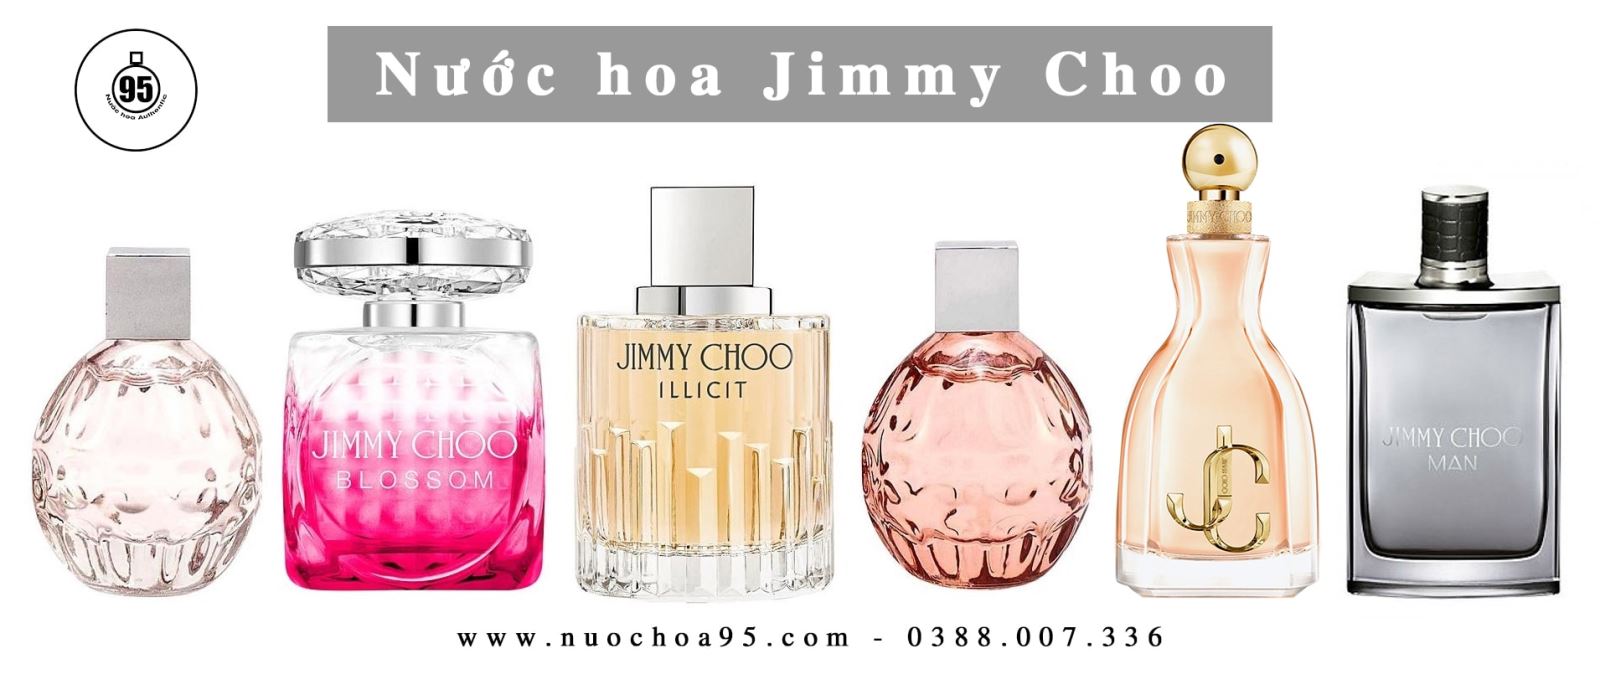 Nước hoa Jimmy Choo